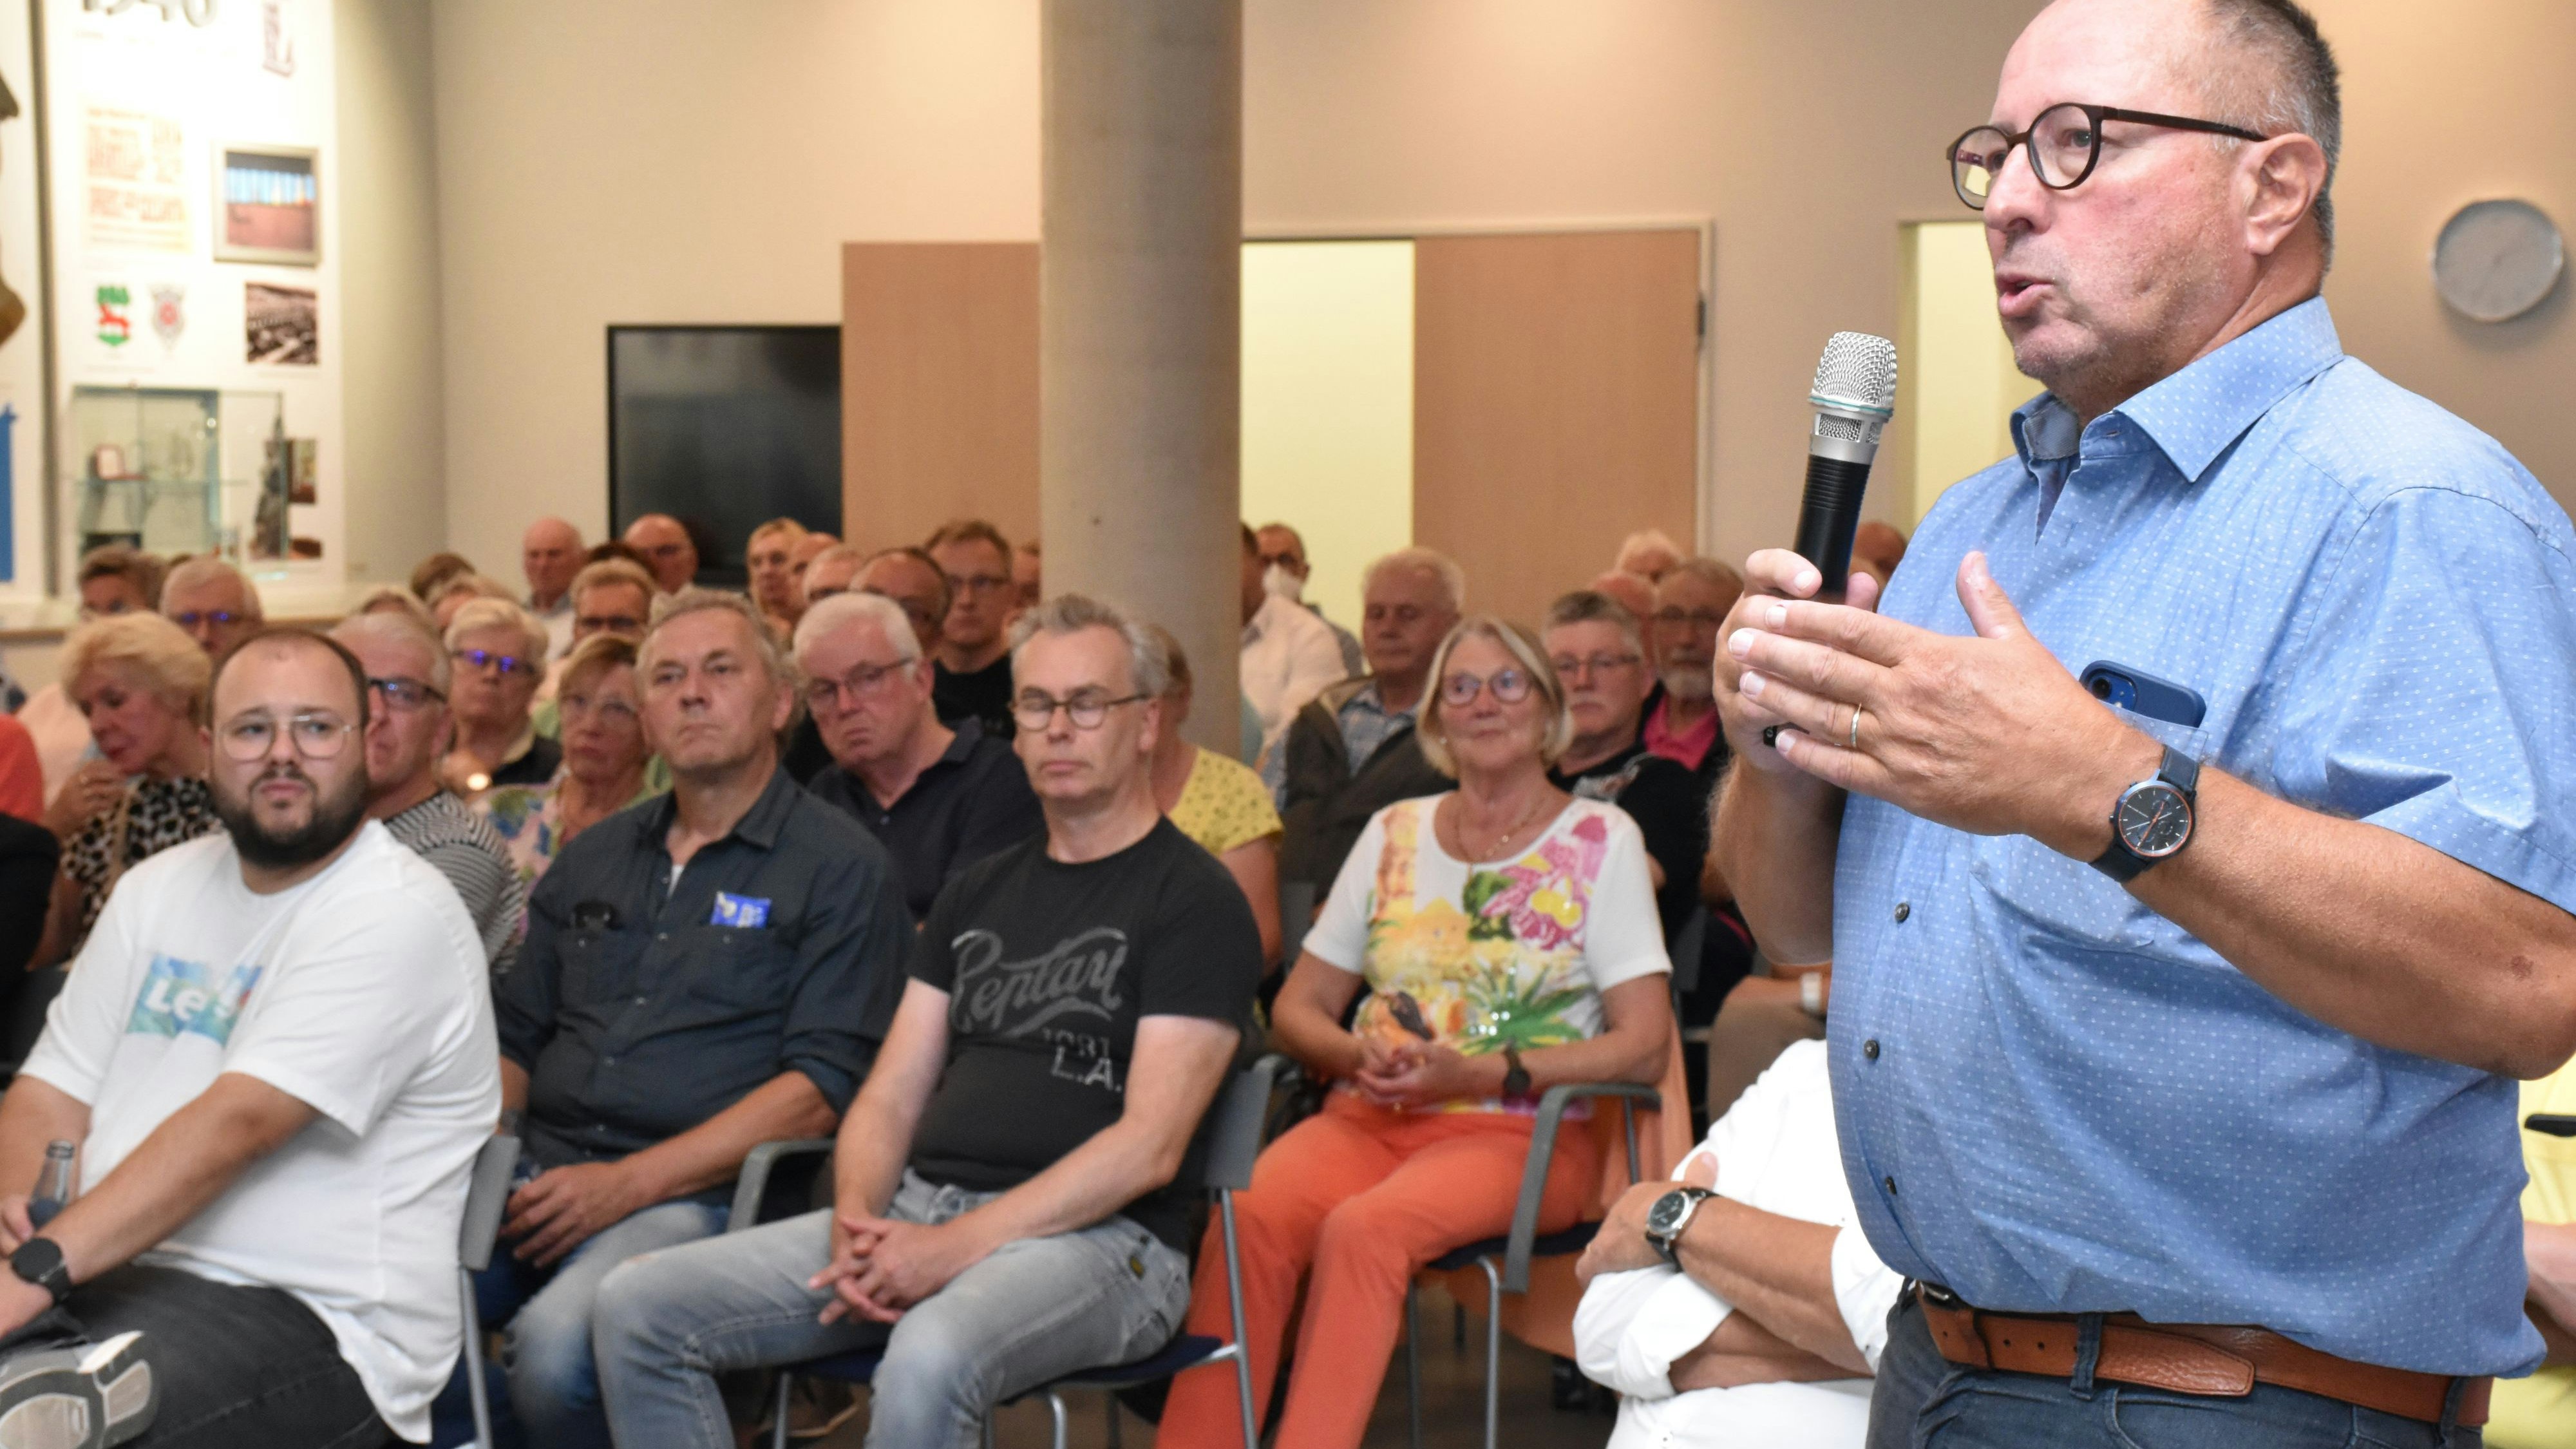 Redebedarf: 130 Gäste kamen zur Infoveranstaltung über die Zukunft des Krankenhausstandortes Lohne. Viele stellten kritische Fragen, etwa Eckhard Knospe (rechts). Foto: Berg